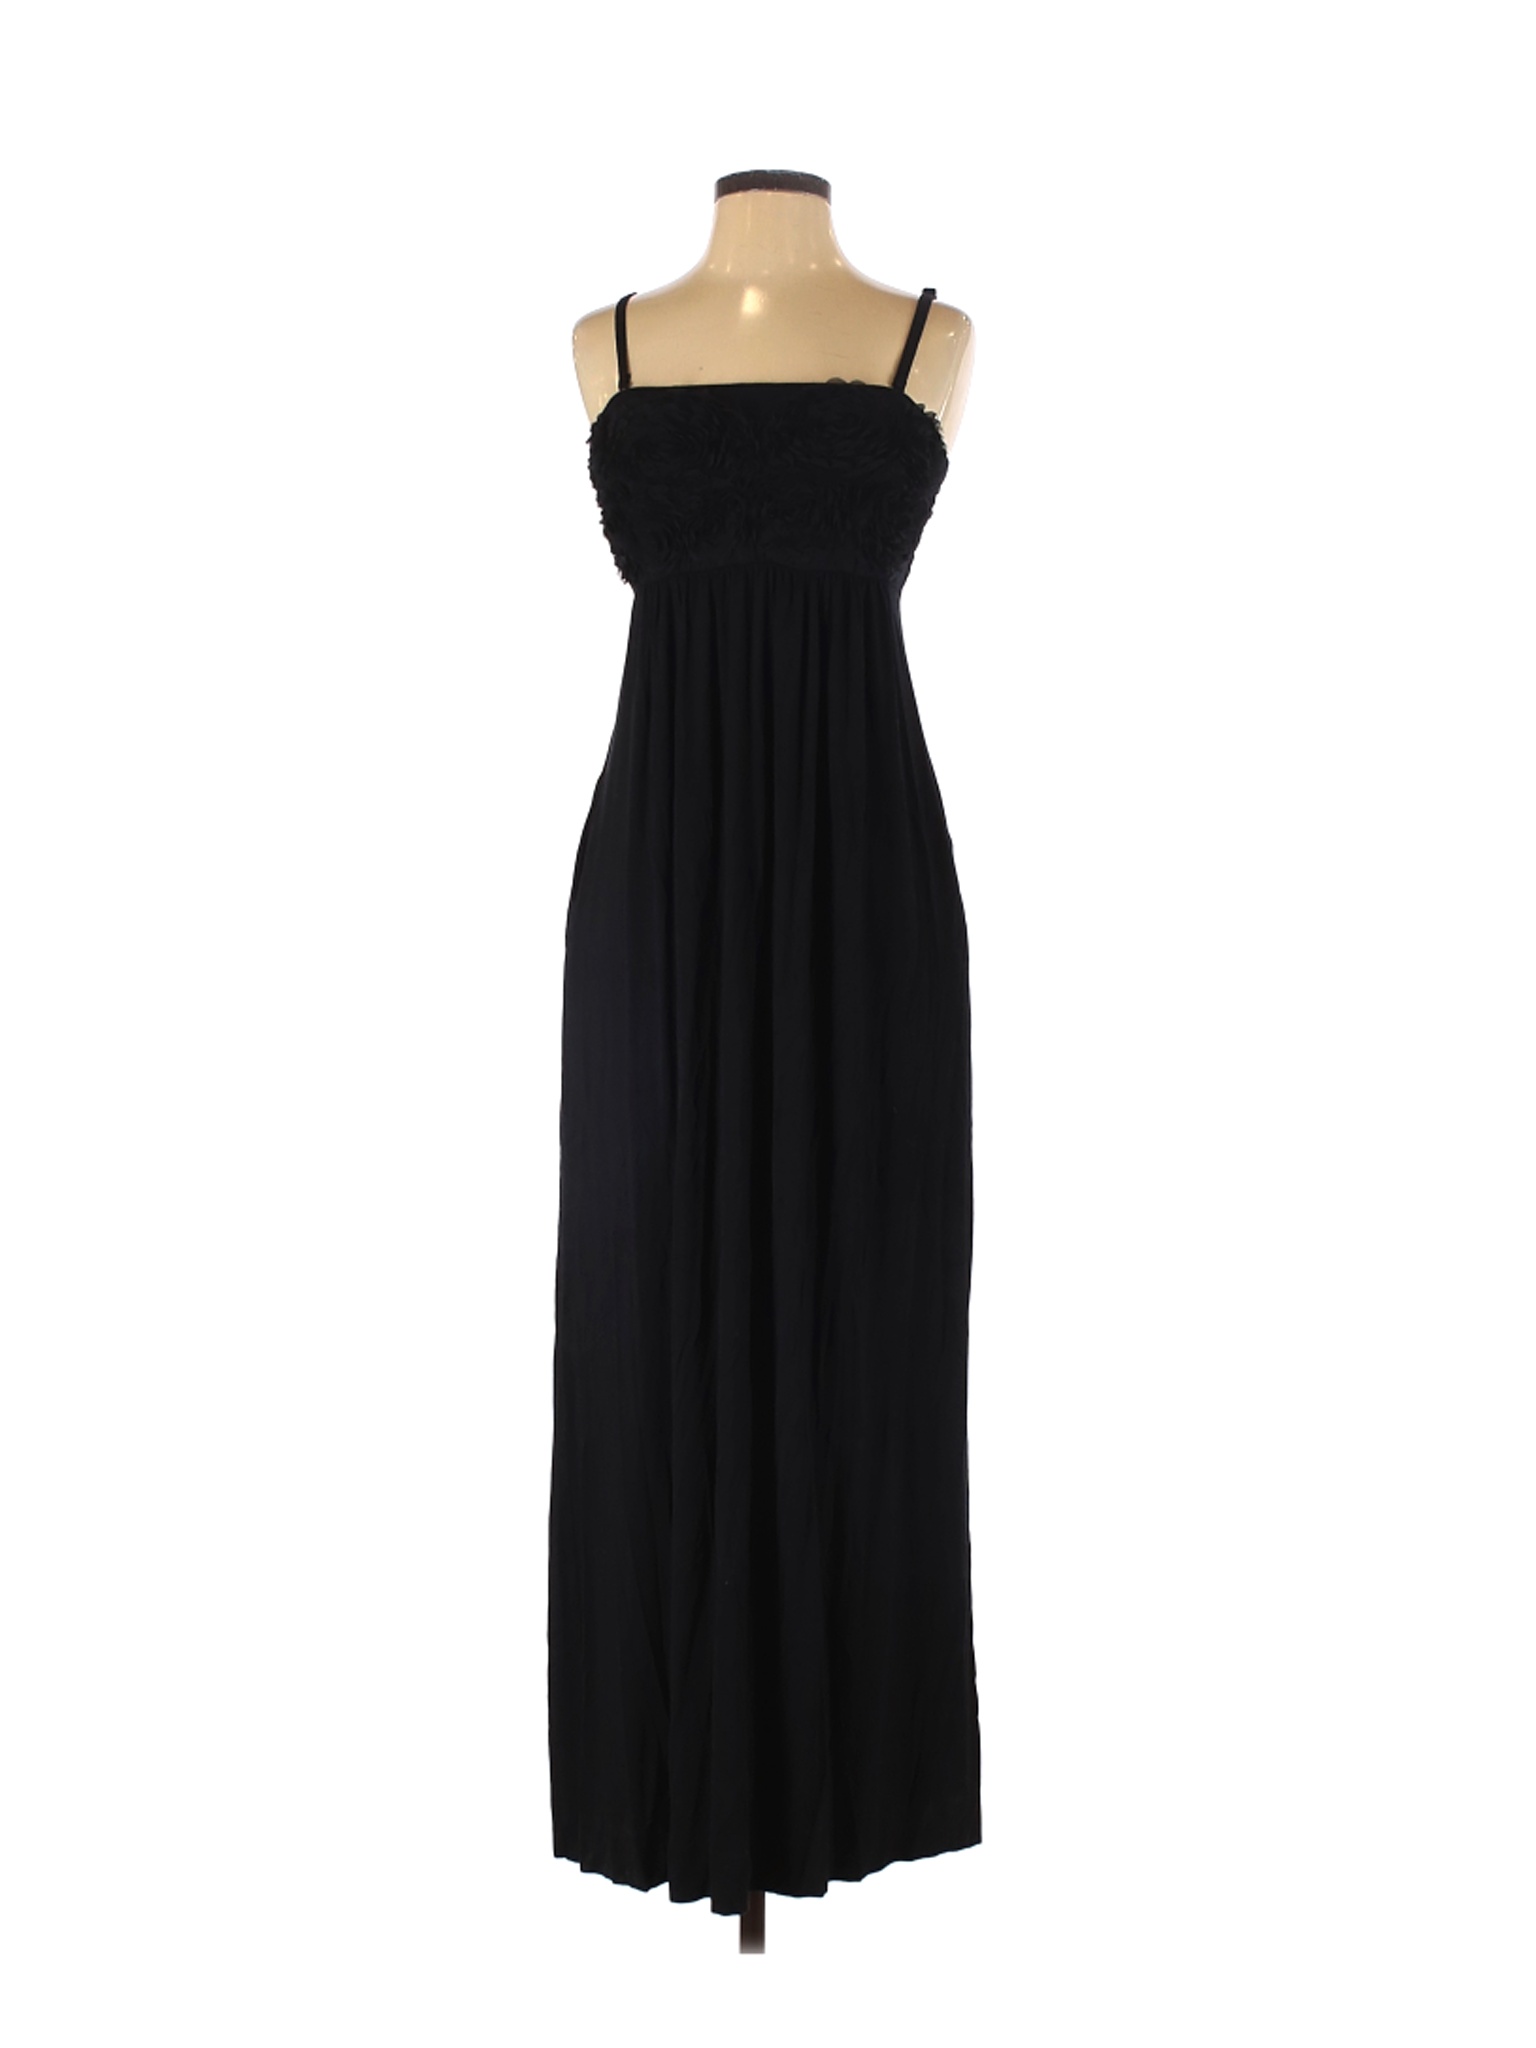 Soma Women Black Cocktail Dress S | eBay